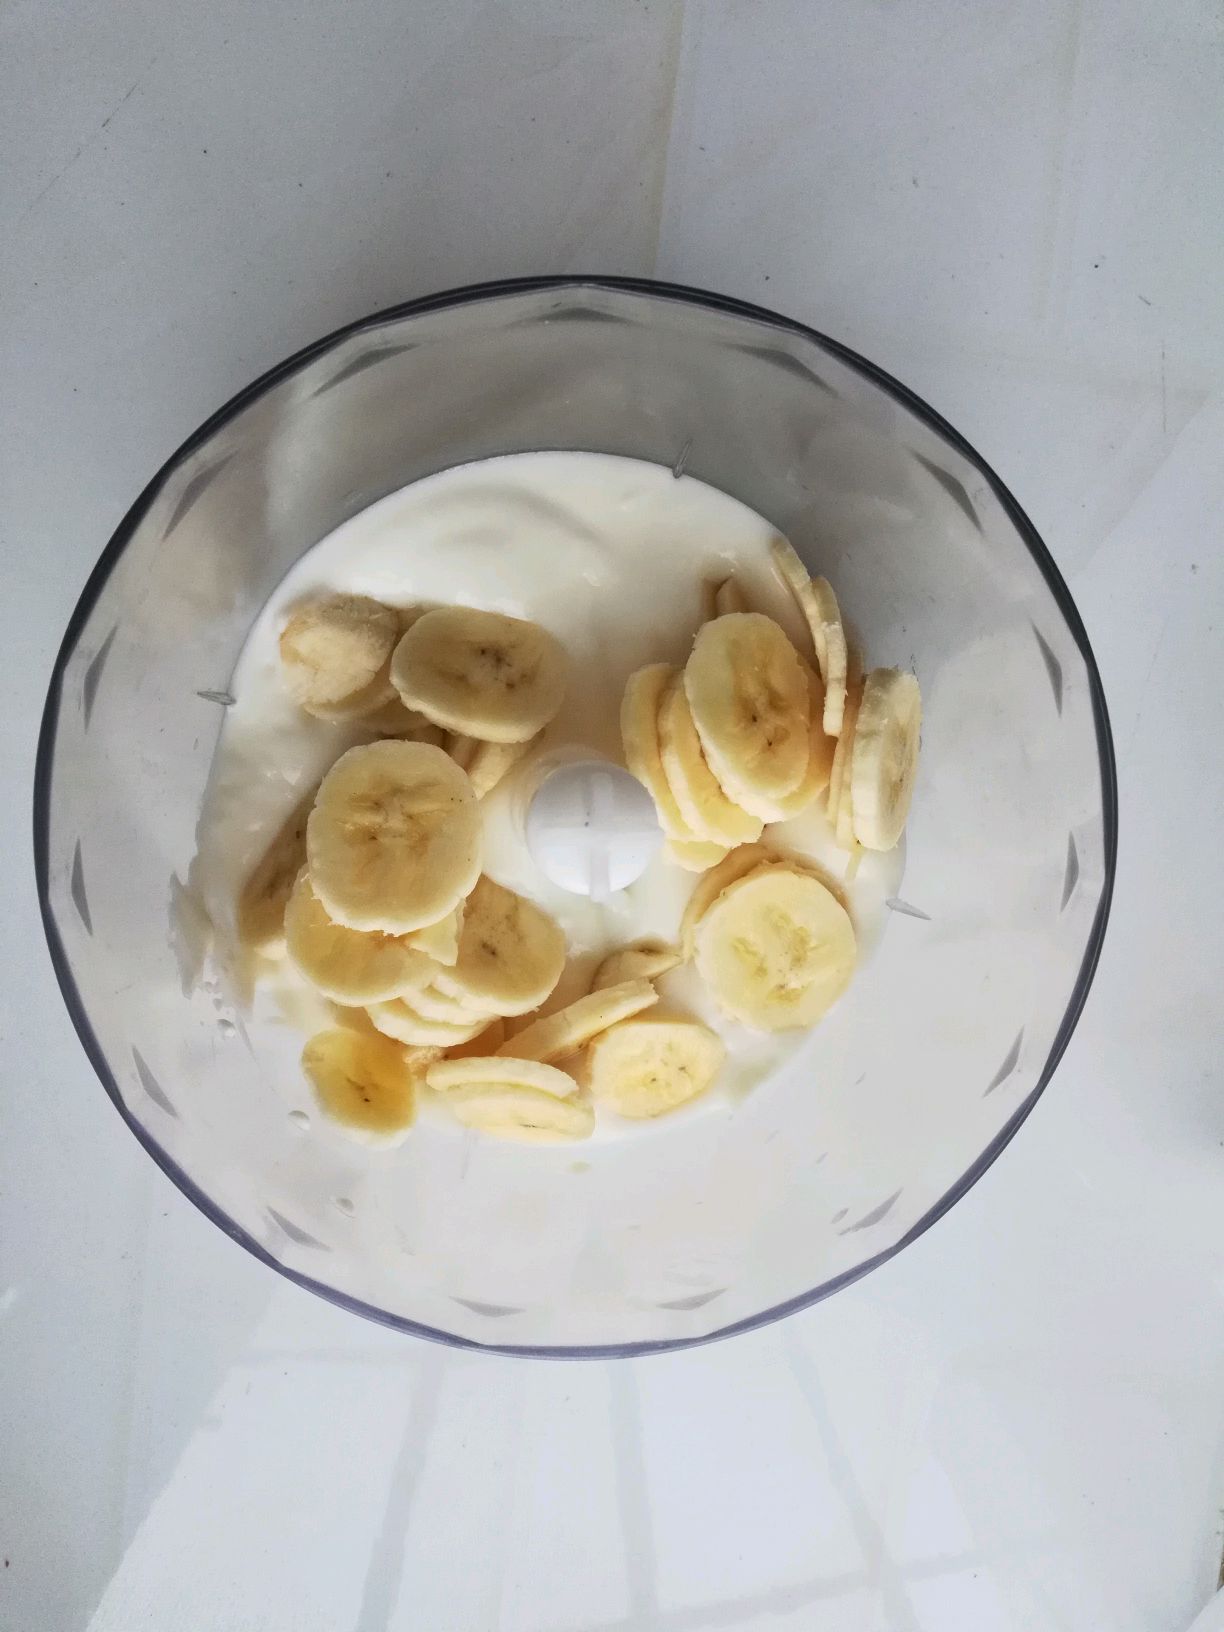 酸奶用香蕉 库存照片. 图片 包括有 甜甜, 嘎吱咬嚼, 点心, 健康, 虚拟, 乳脂状, 生活, 牛奶 - 55091142